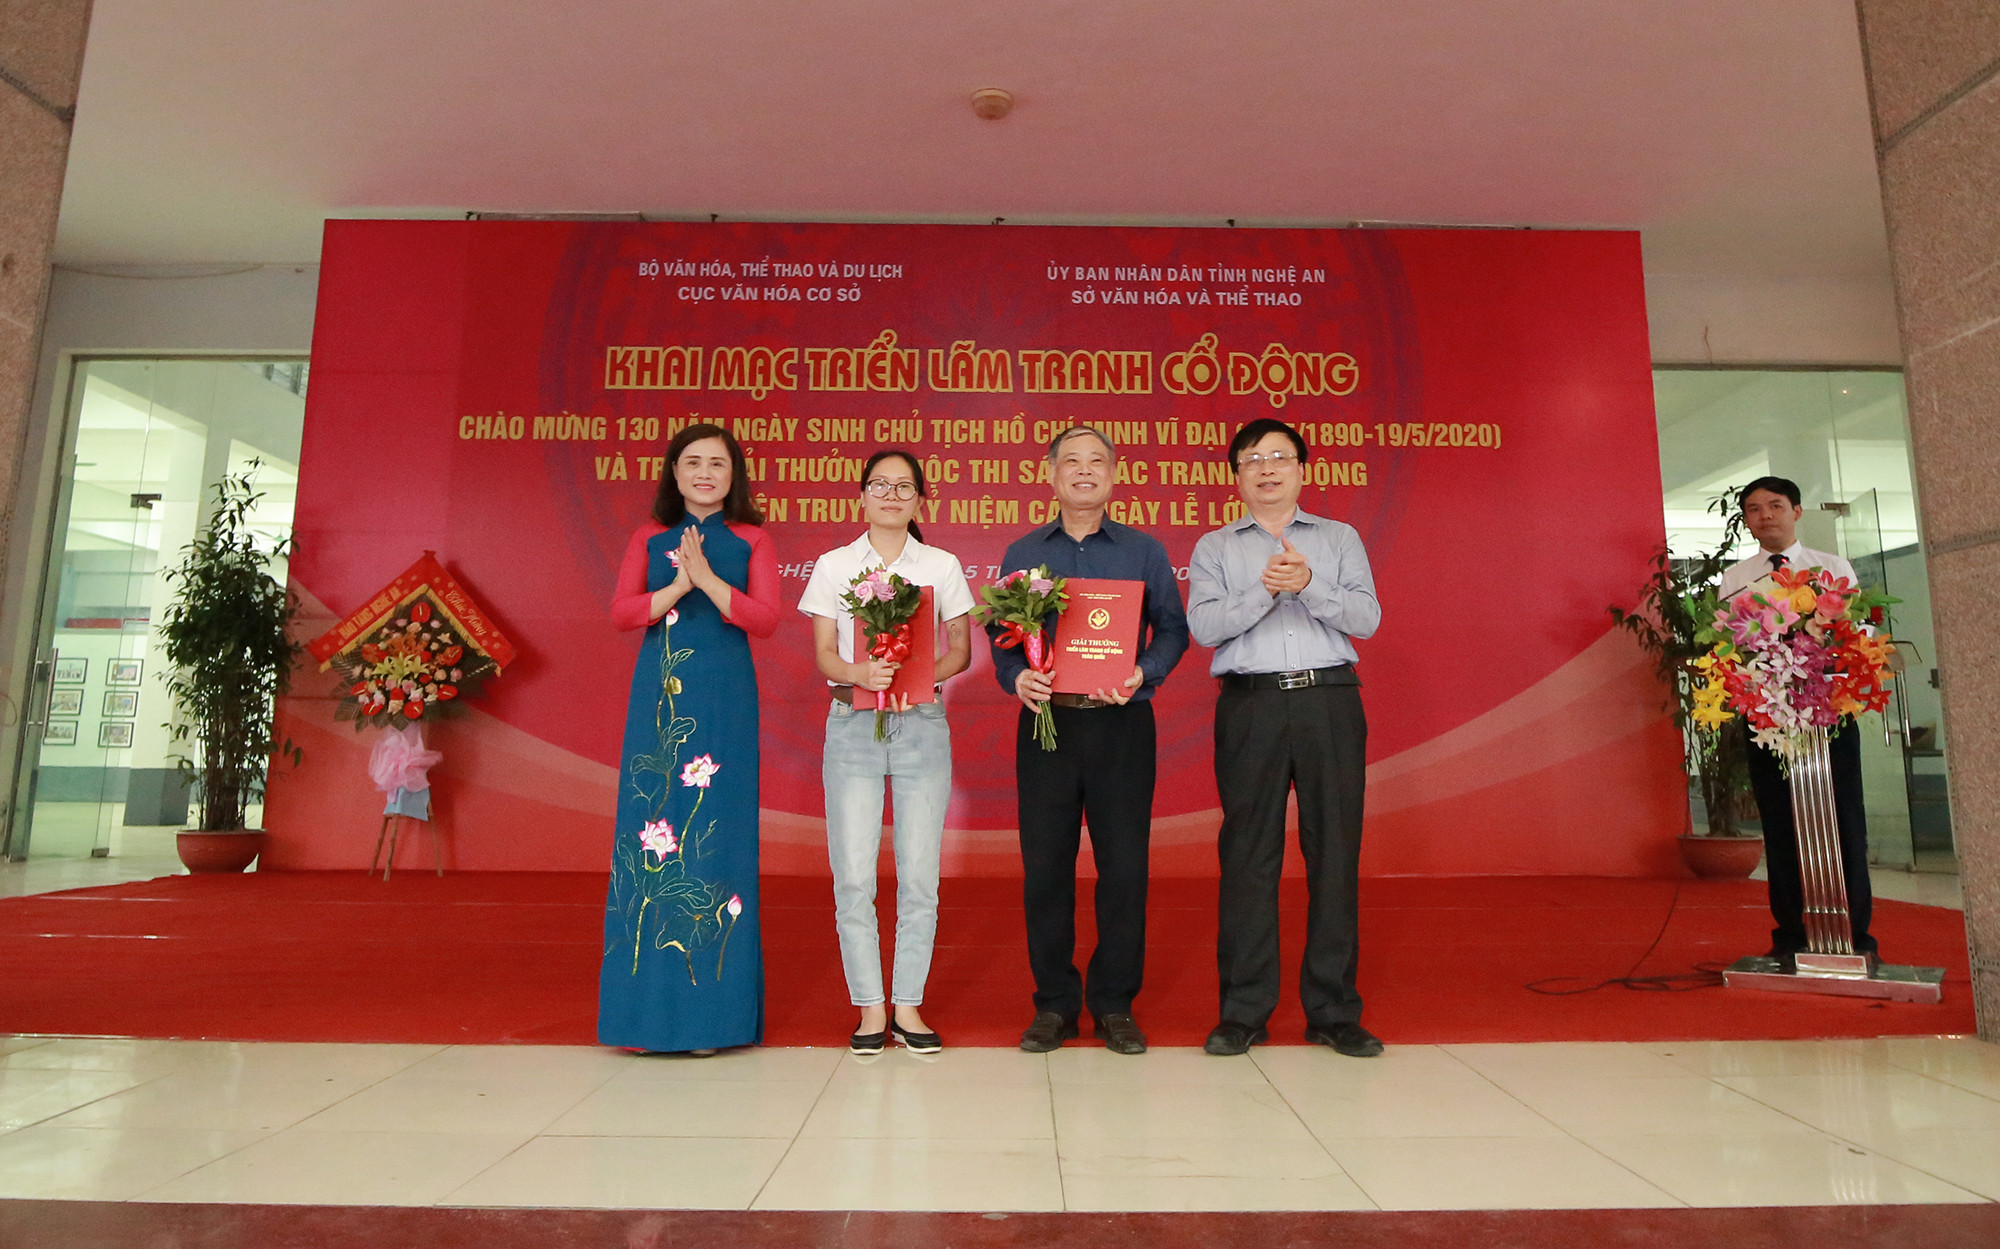 Đại diện lãnh đạo Cục trưởng Cục VHCS – Bộ Văn hóa, Thể thao & Du lịch và lãnh đạo tỉnh Nghệ An trao giải Nhất cuộc thi tranh cổ động về Chủ tịch Hồ Chú Minh. Ảnh: Trung Kiên